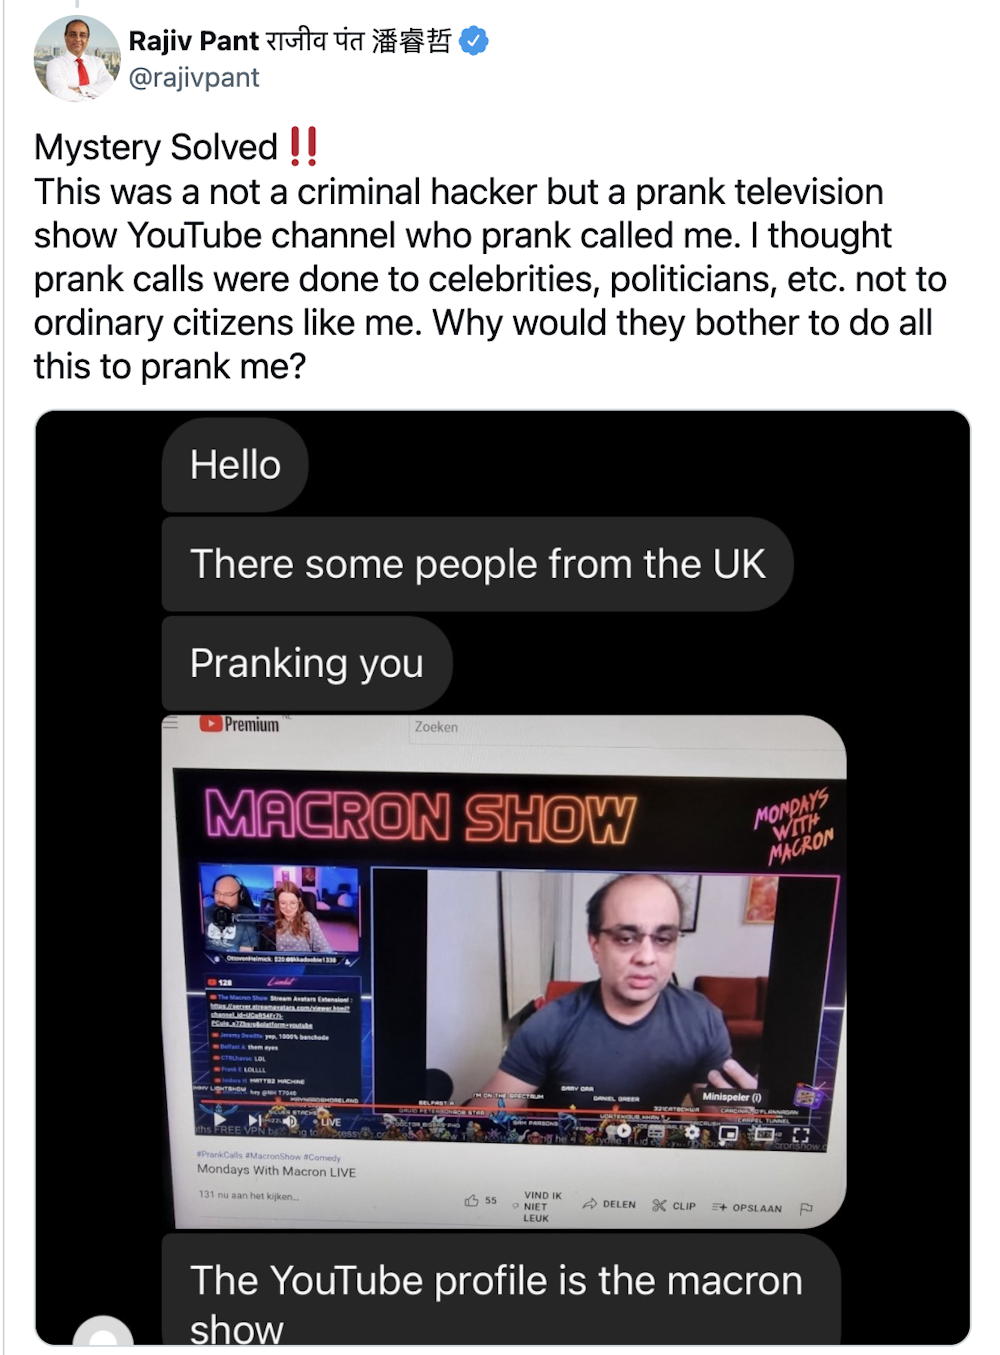 aiverify.net scam prank show